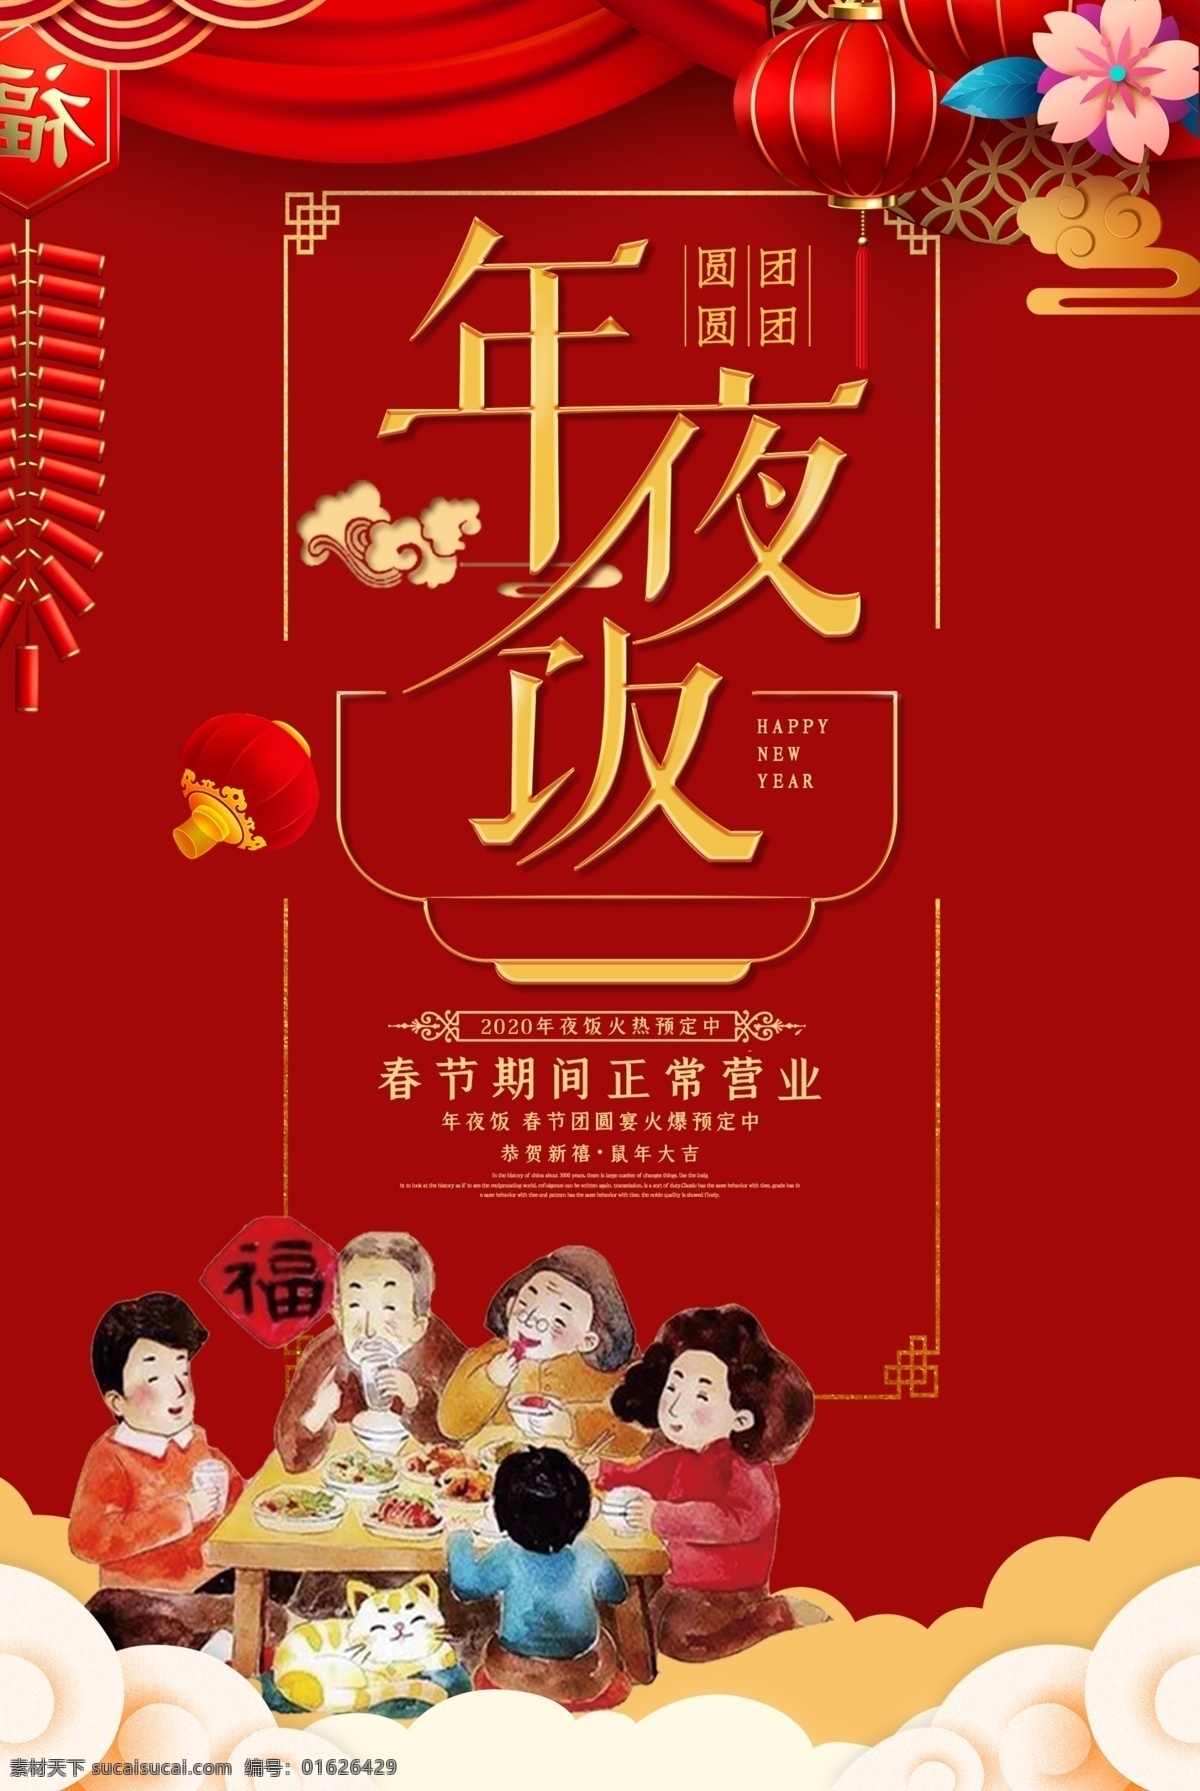 年夜饭 春节 预定 新年 海报素材